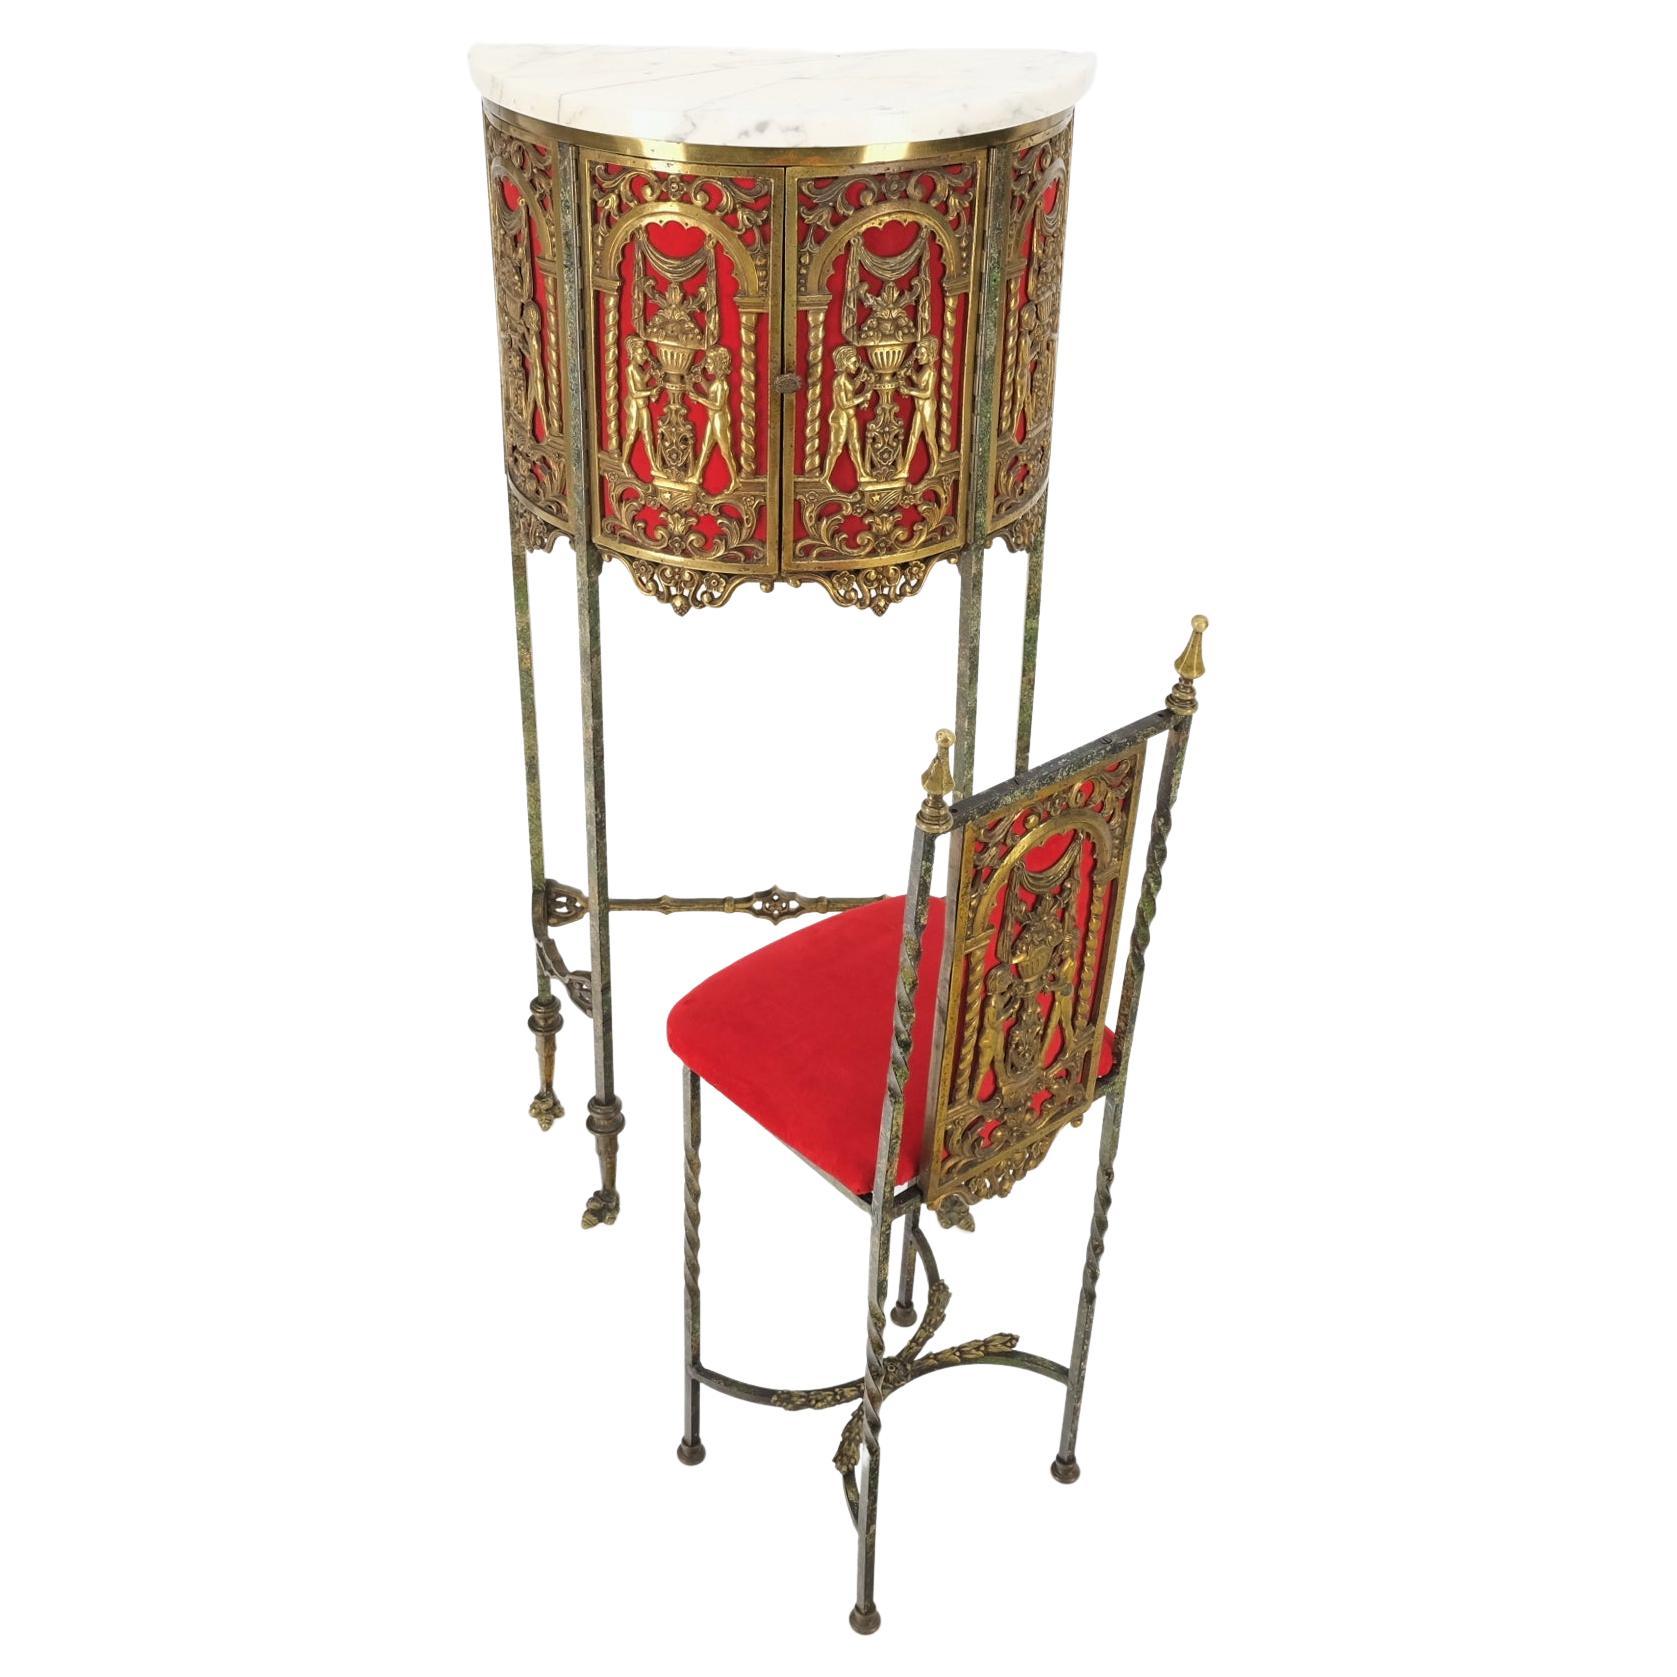 Sehr feine Demi Lune Bronze Ornamente montieren dekoriert Petit Konsole Tisch mit Stuhl Minze.
Der Stuhl misst 10 x 10 x 32 x 18,5.